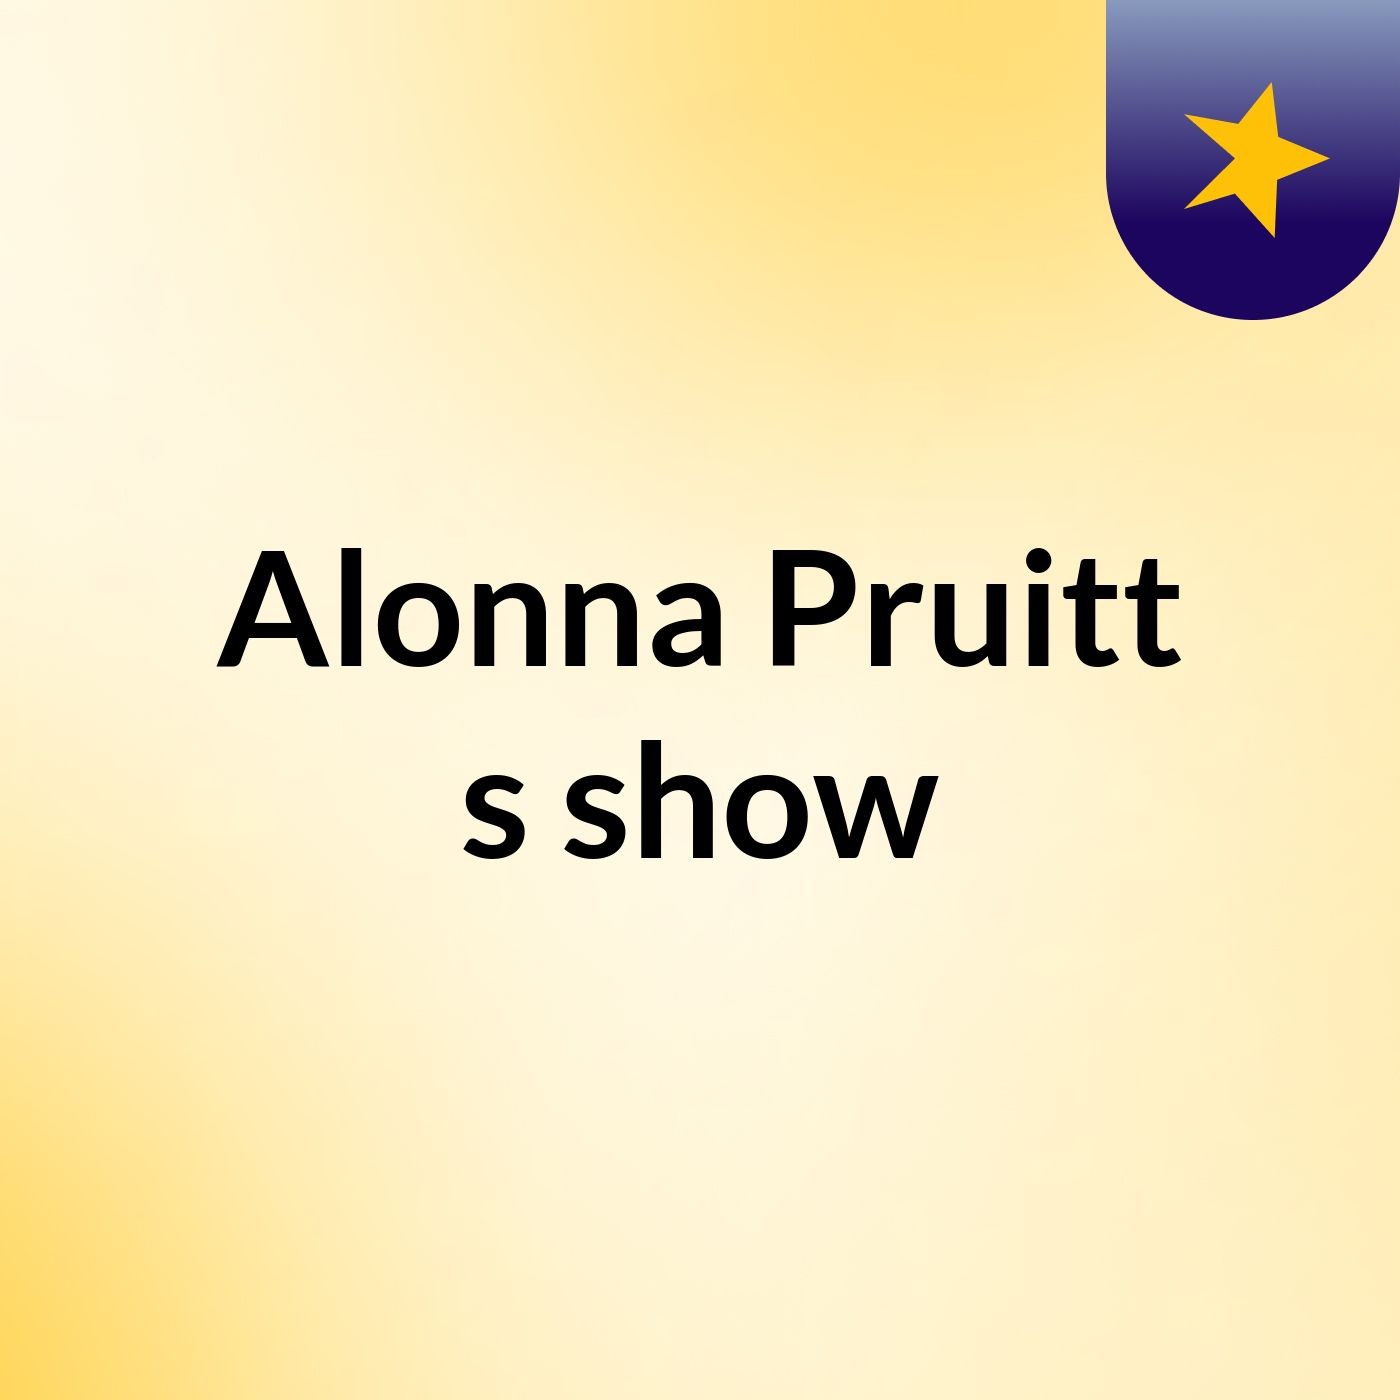 Alonna Pruitt's show